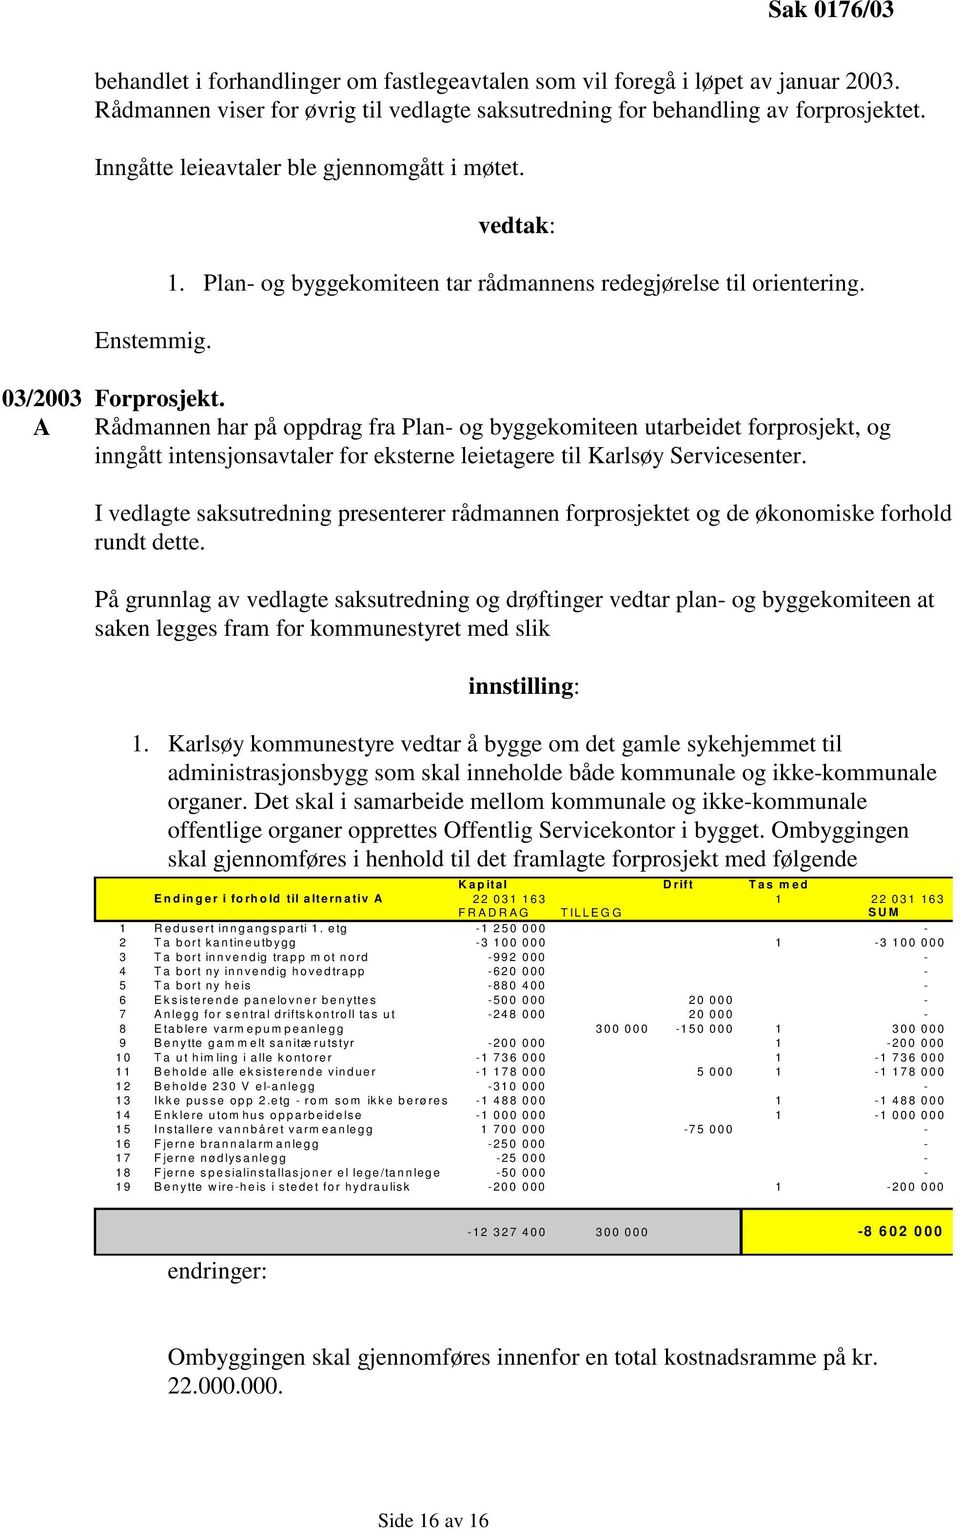 Rådmannen har på oppdrag fra Plan- og byggekomiteen utarbeidet forprosjekt, og inngått intensjonsavtaler for eksterne leietagere til Karlsøy Servicesenter.